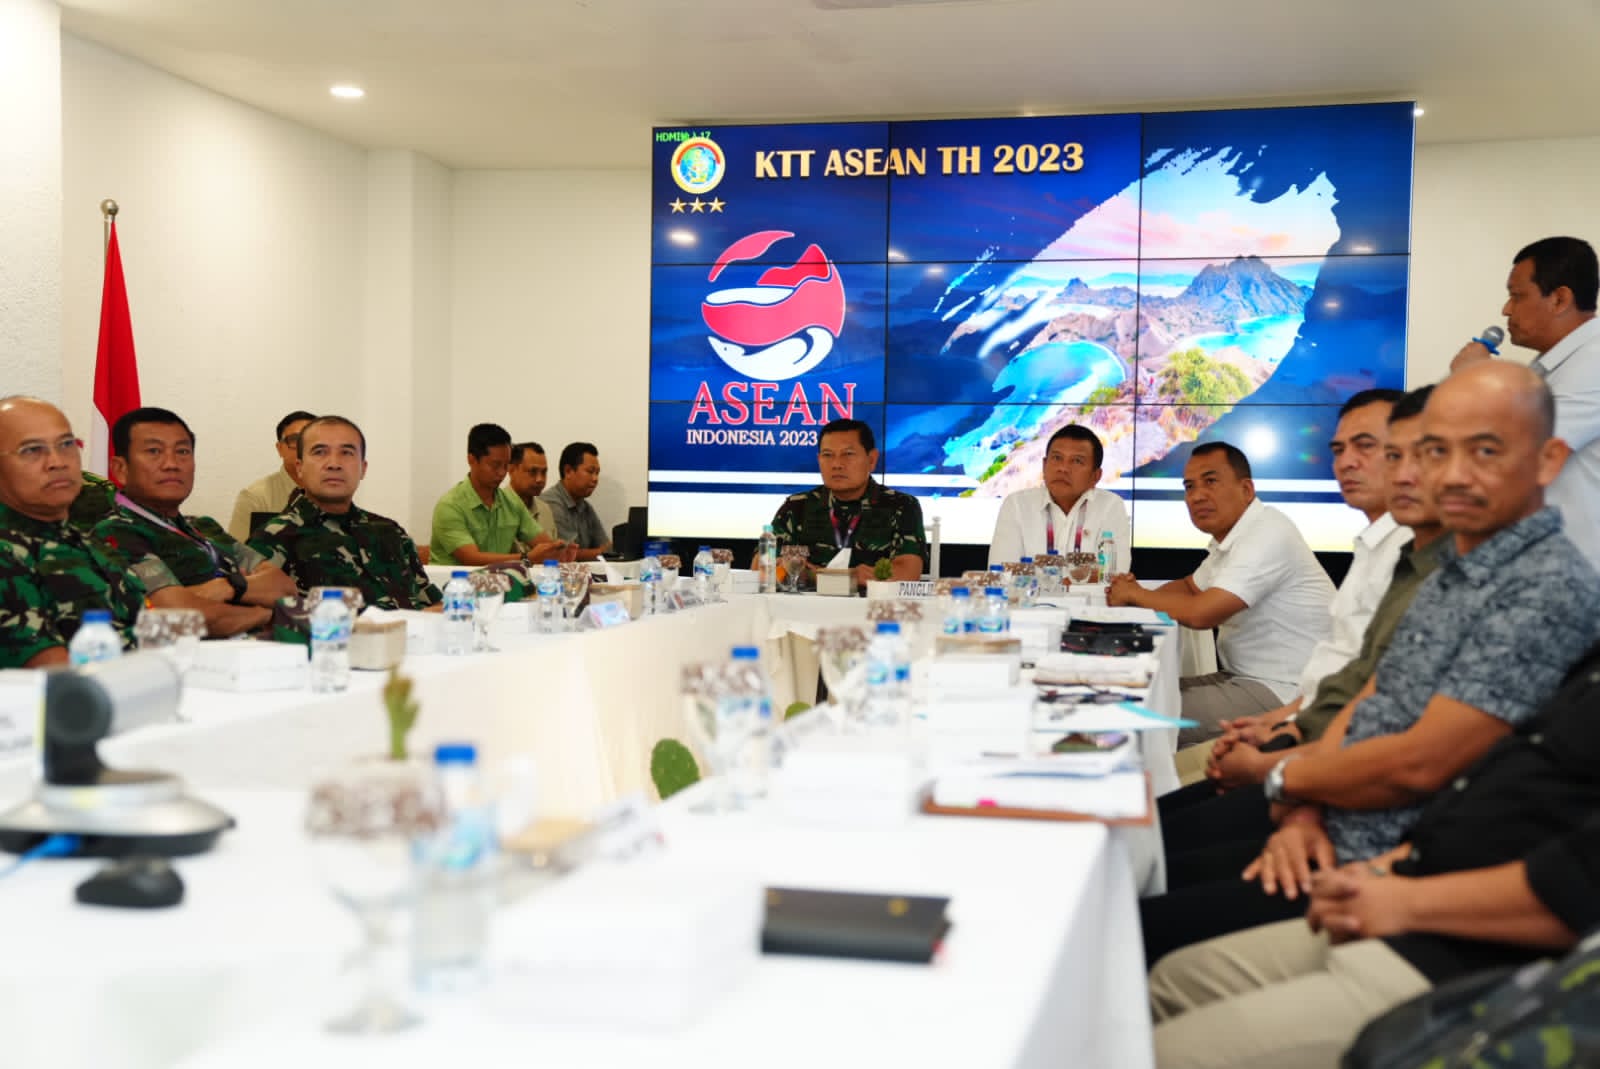 Panglima TNI Laksamana Yudo Margono Cek Kesiapan Satuan Tugas Intelijen Pengamanan KTT ASEAN ke-42